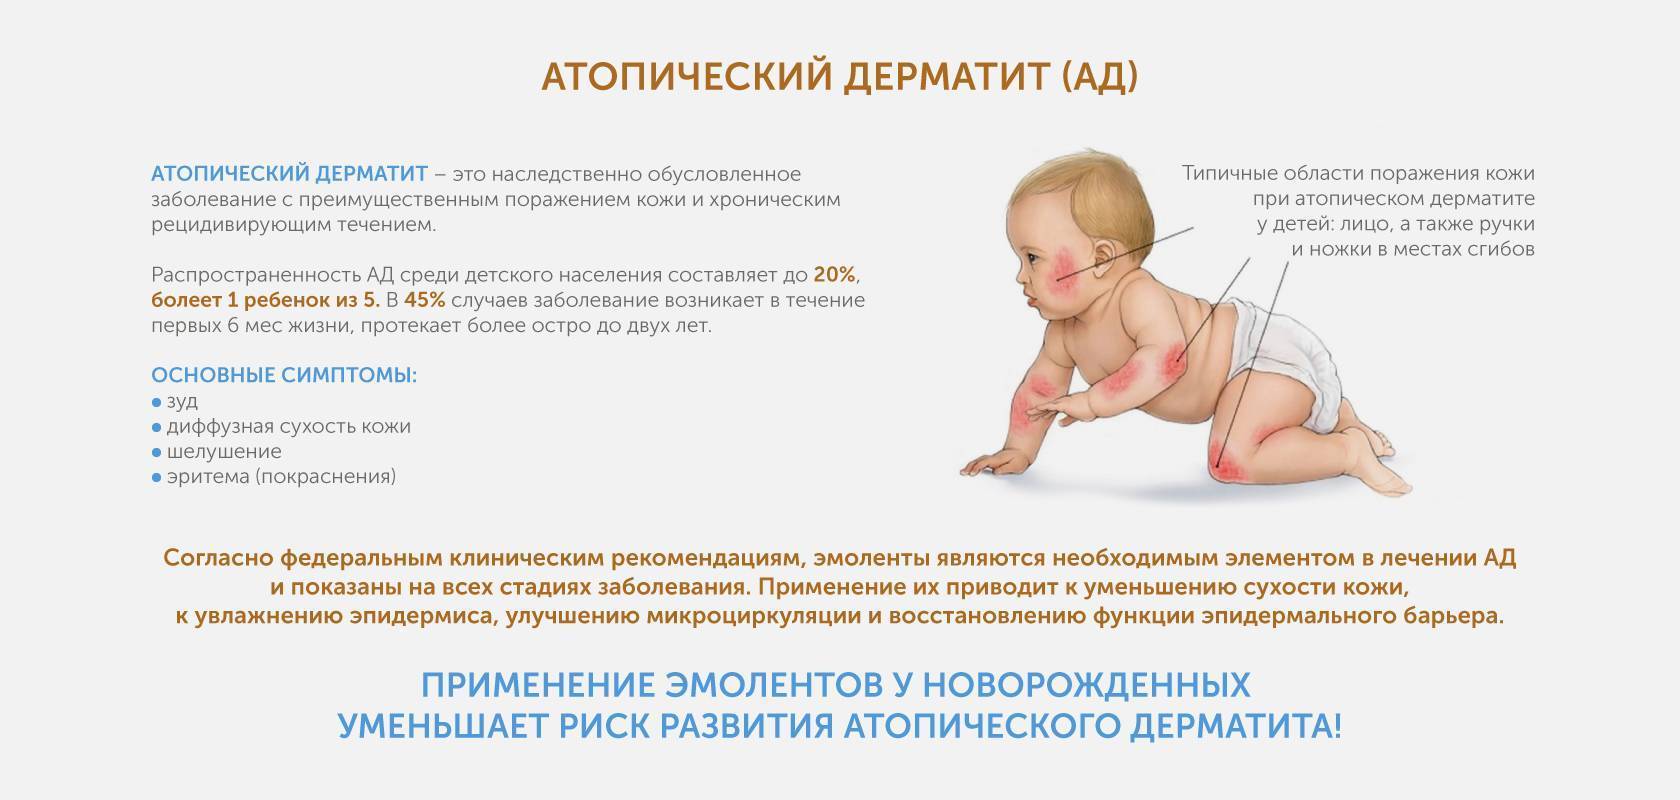 Аллергия на молоко у ребенка: симптомы, фото непереносимости белка у грудничка